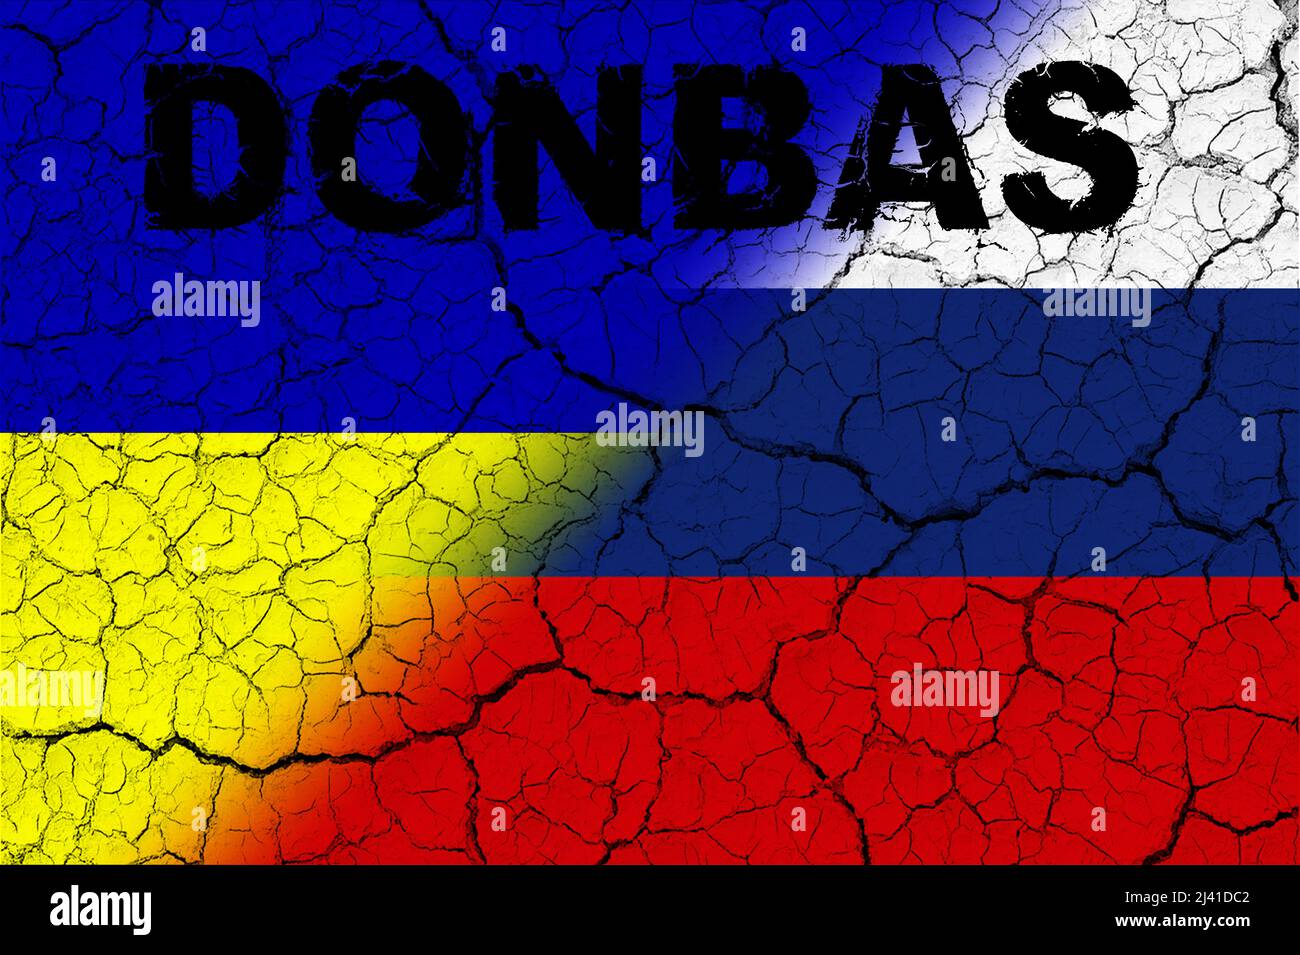 Donbas. Conflitto tra Ucraina e Russia. Immagine della bandiera della Russia e della bandiera dell'Ucraina con la parola Donbas scritta su di essa. Immagine orizzontale Foto Stock